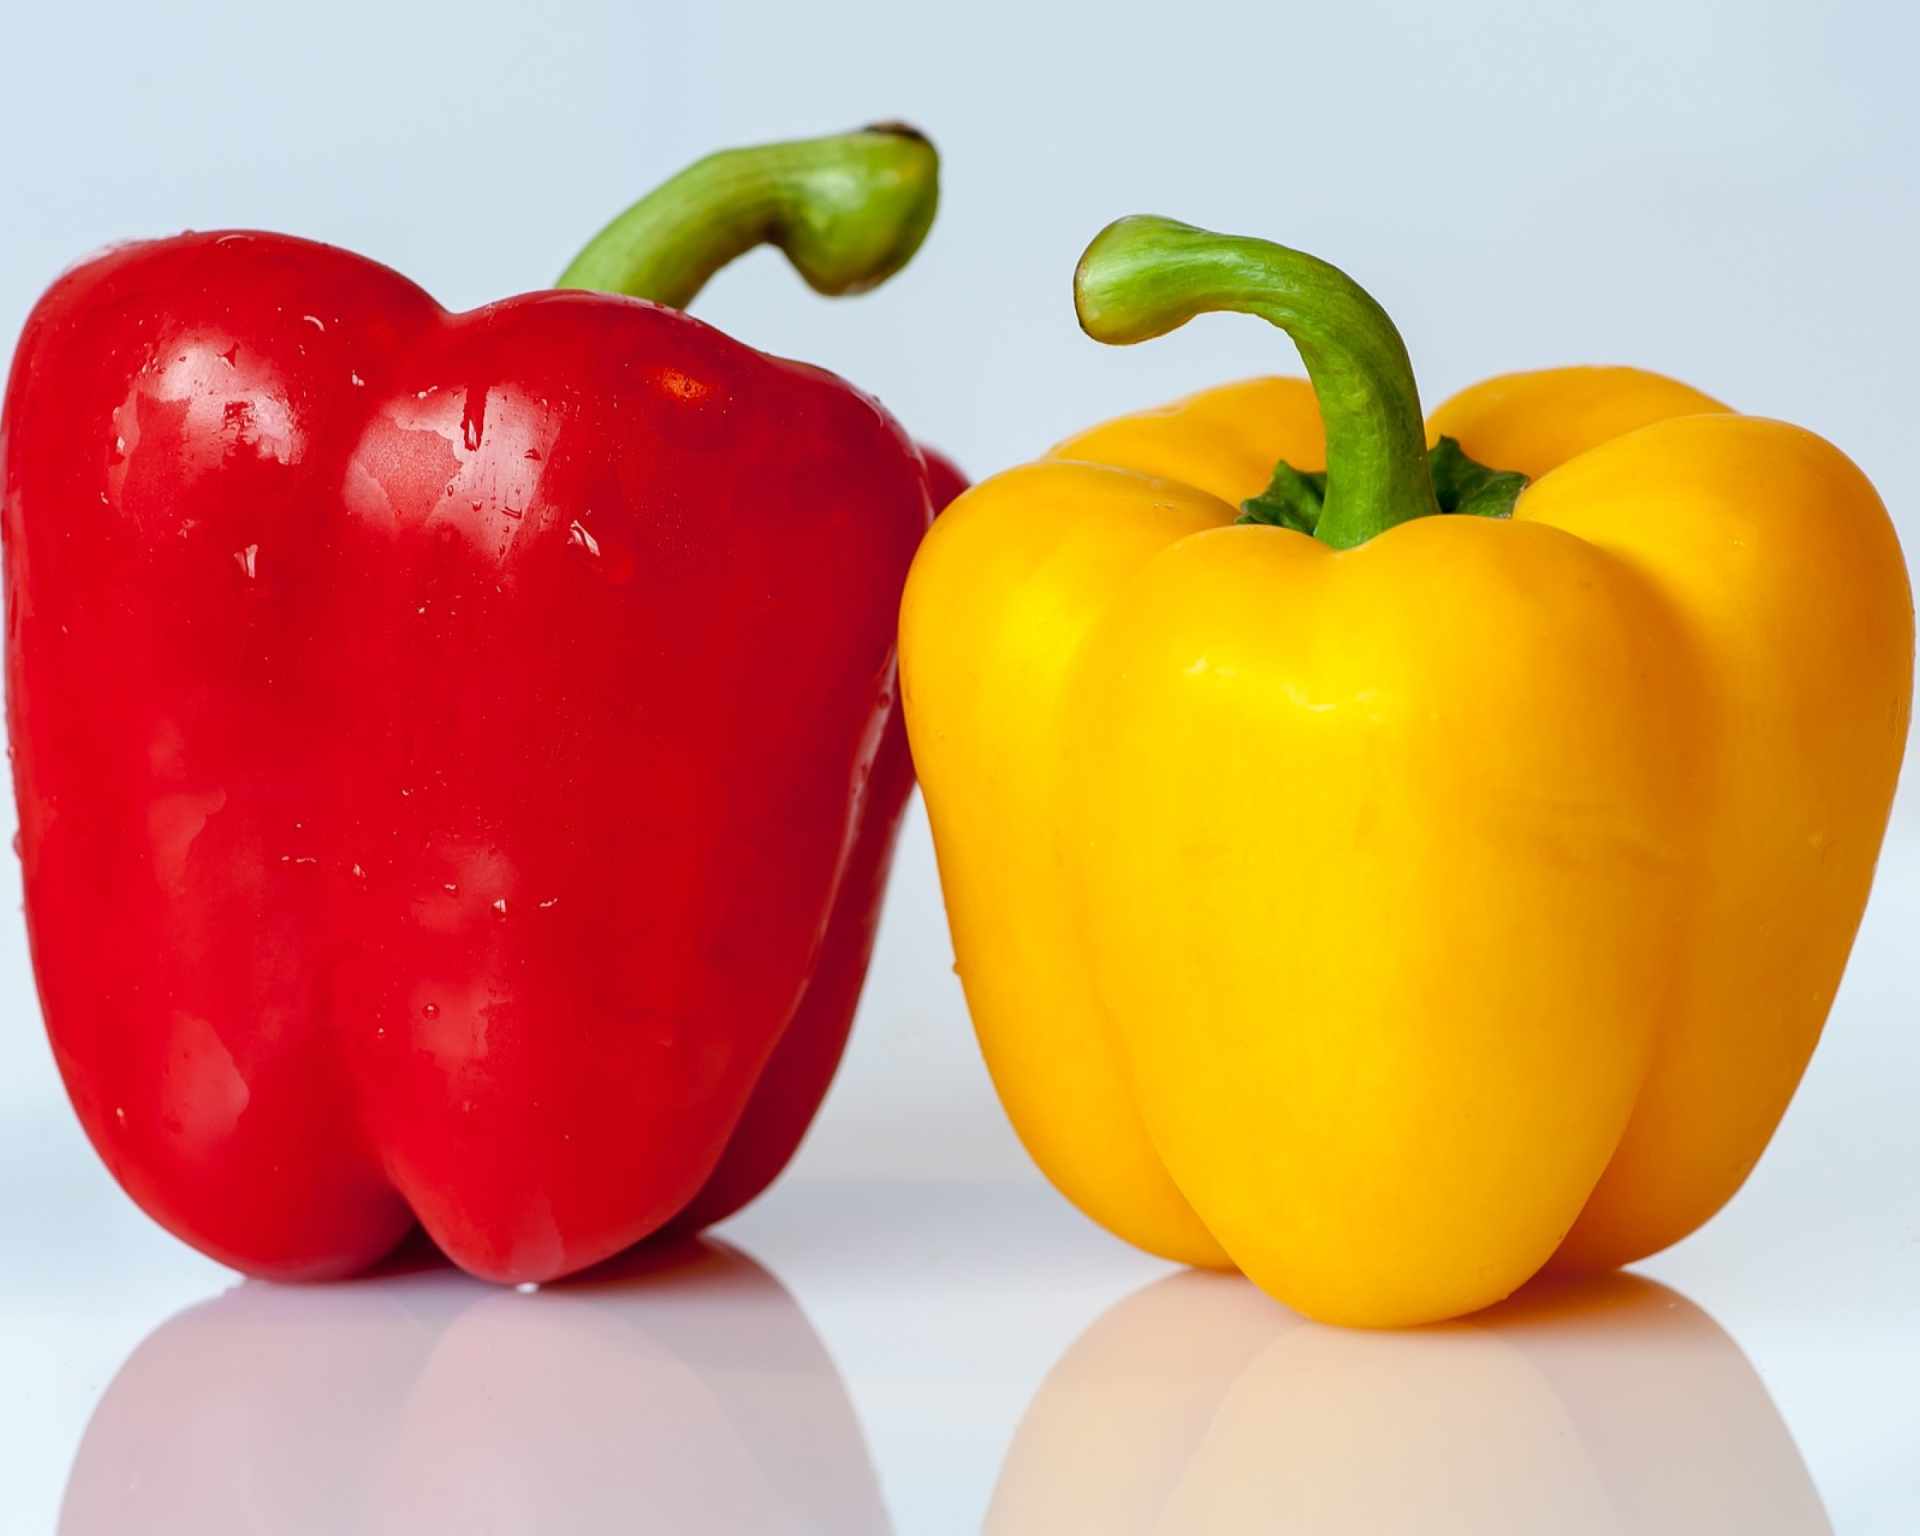 Červená a žltá paprika